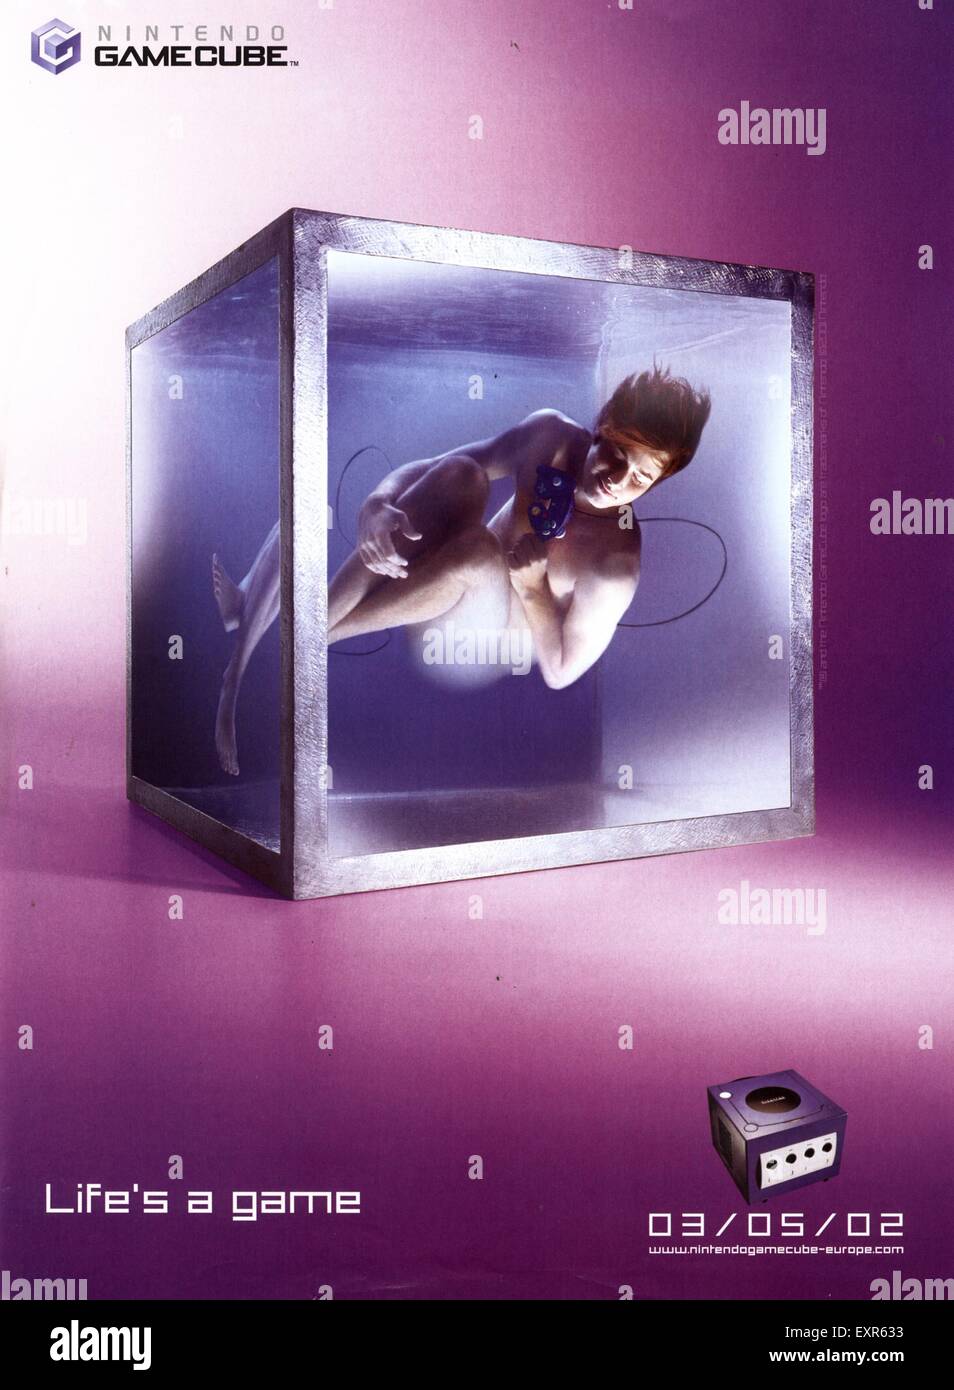 2000s UK Nintendo Magazine anuncio Fotografía de stock - Alamy